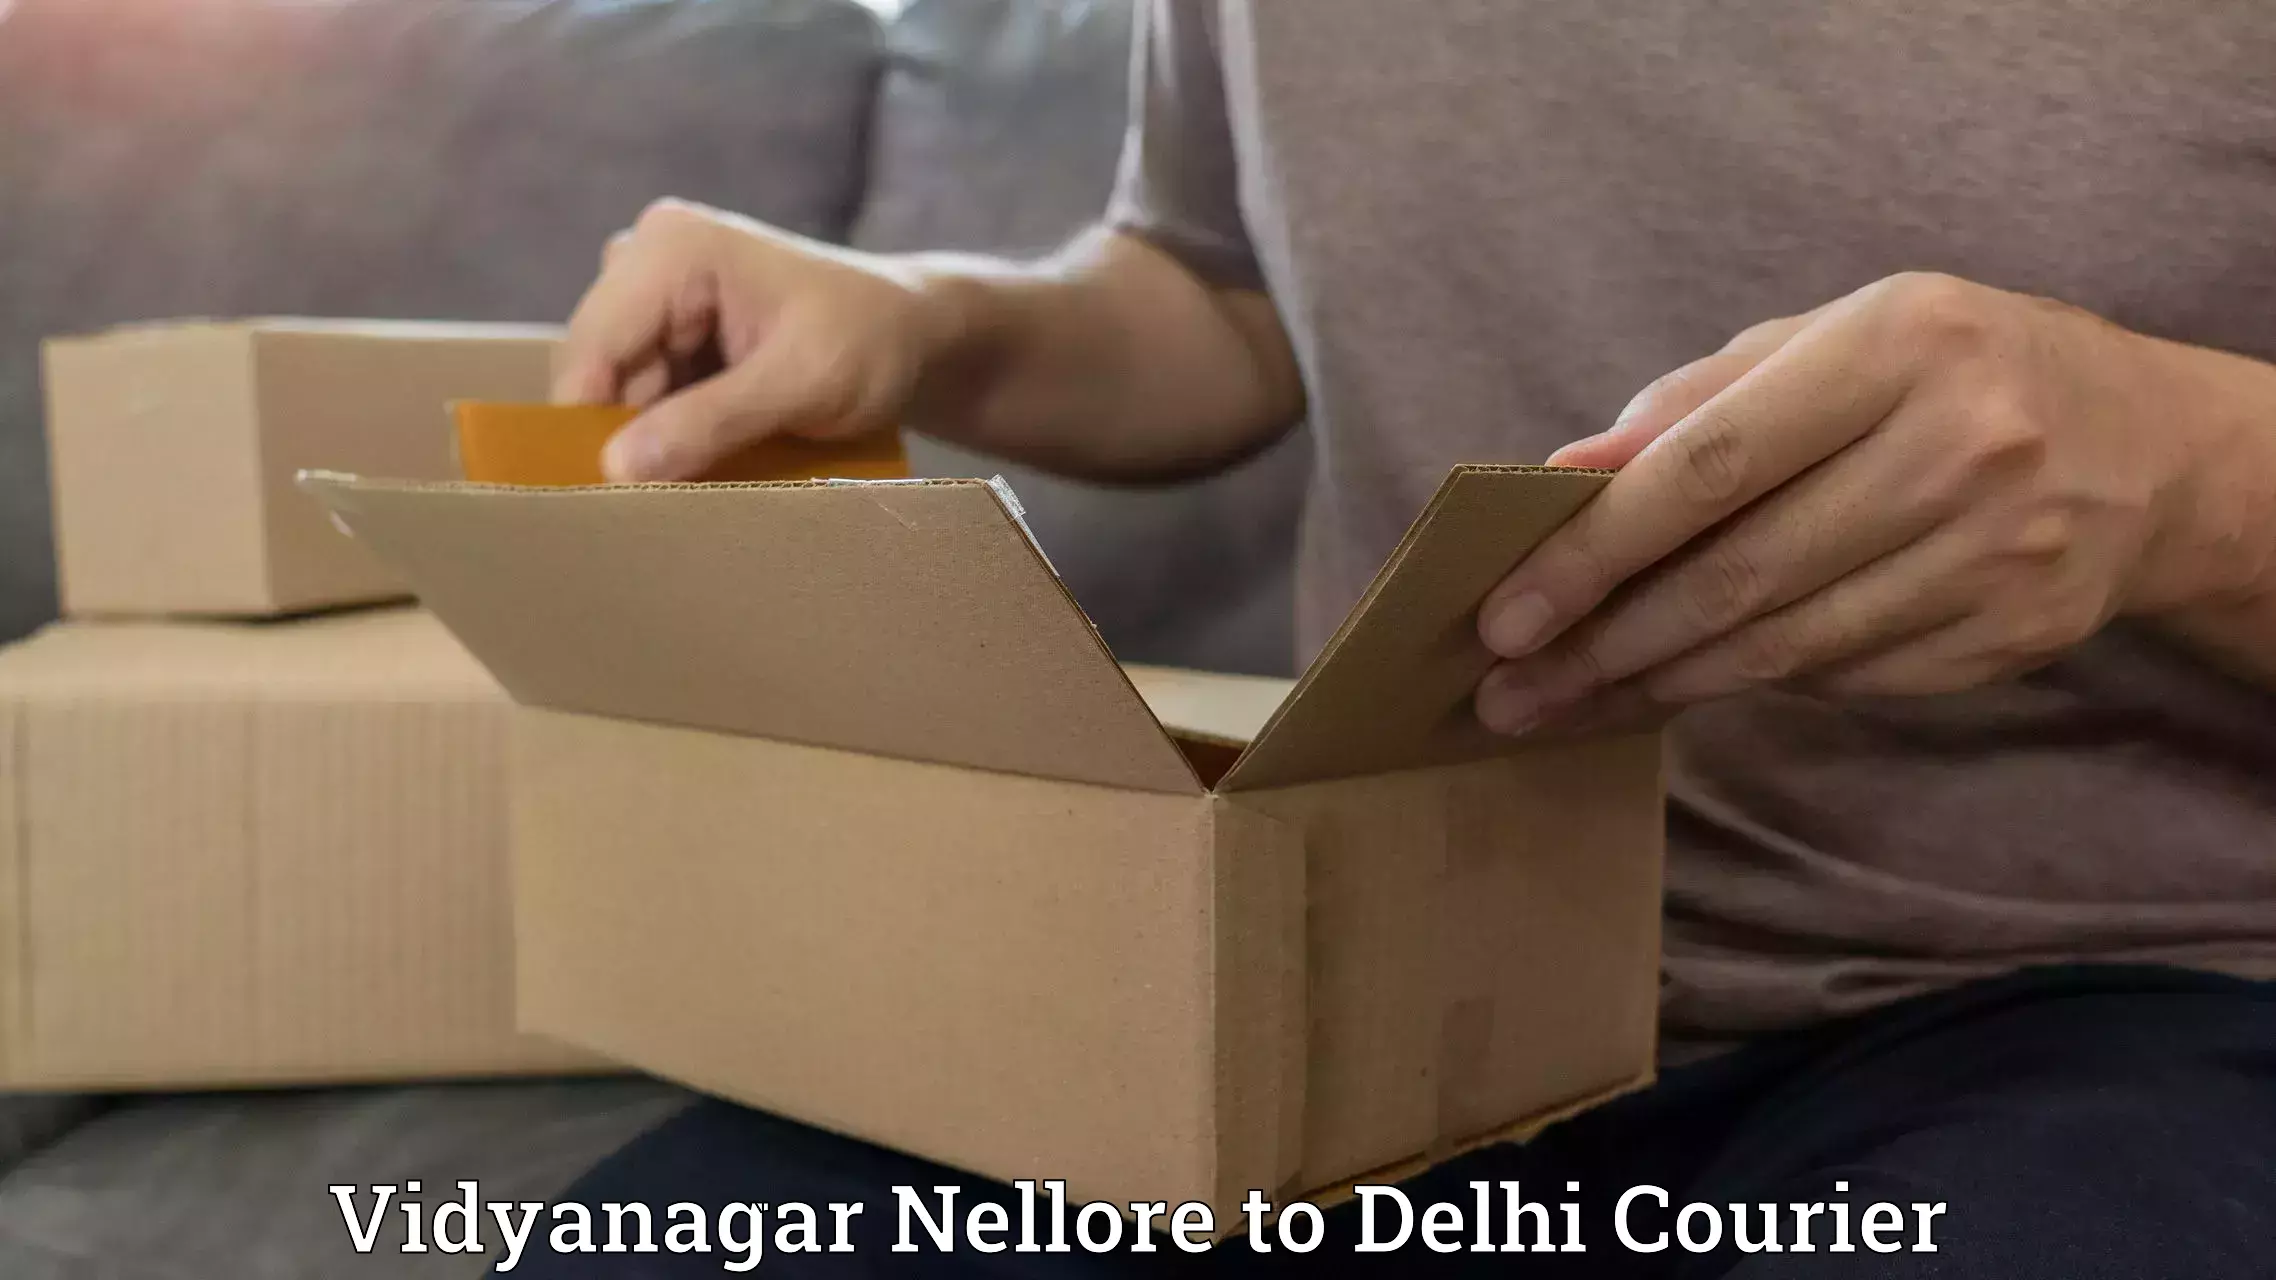 Sustainable courier practices Vidyanagar Nellore to Jawaharlal Nehru University New Delhi